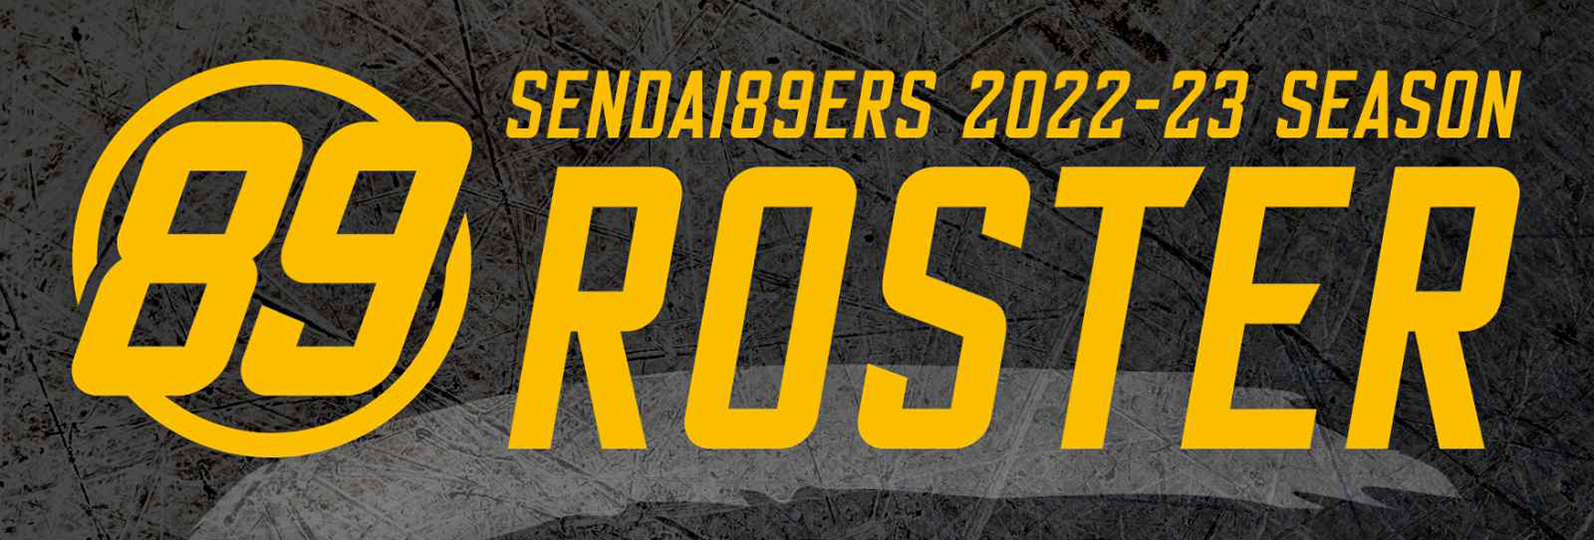 SENDAI89ERS 2022-23 ROSTER